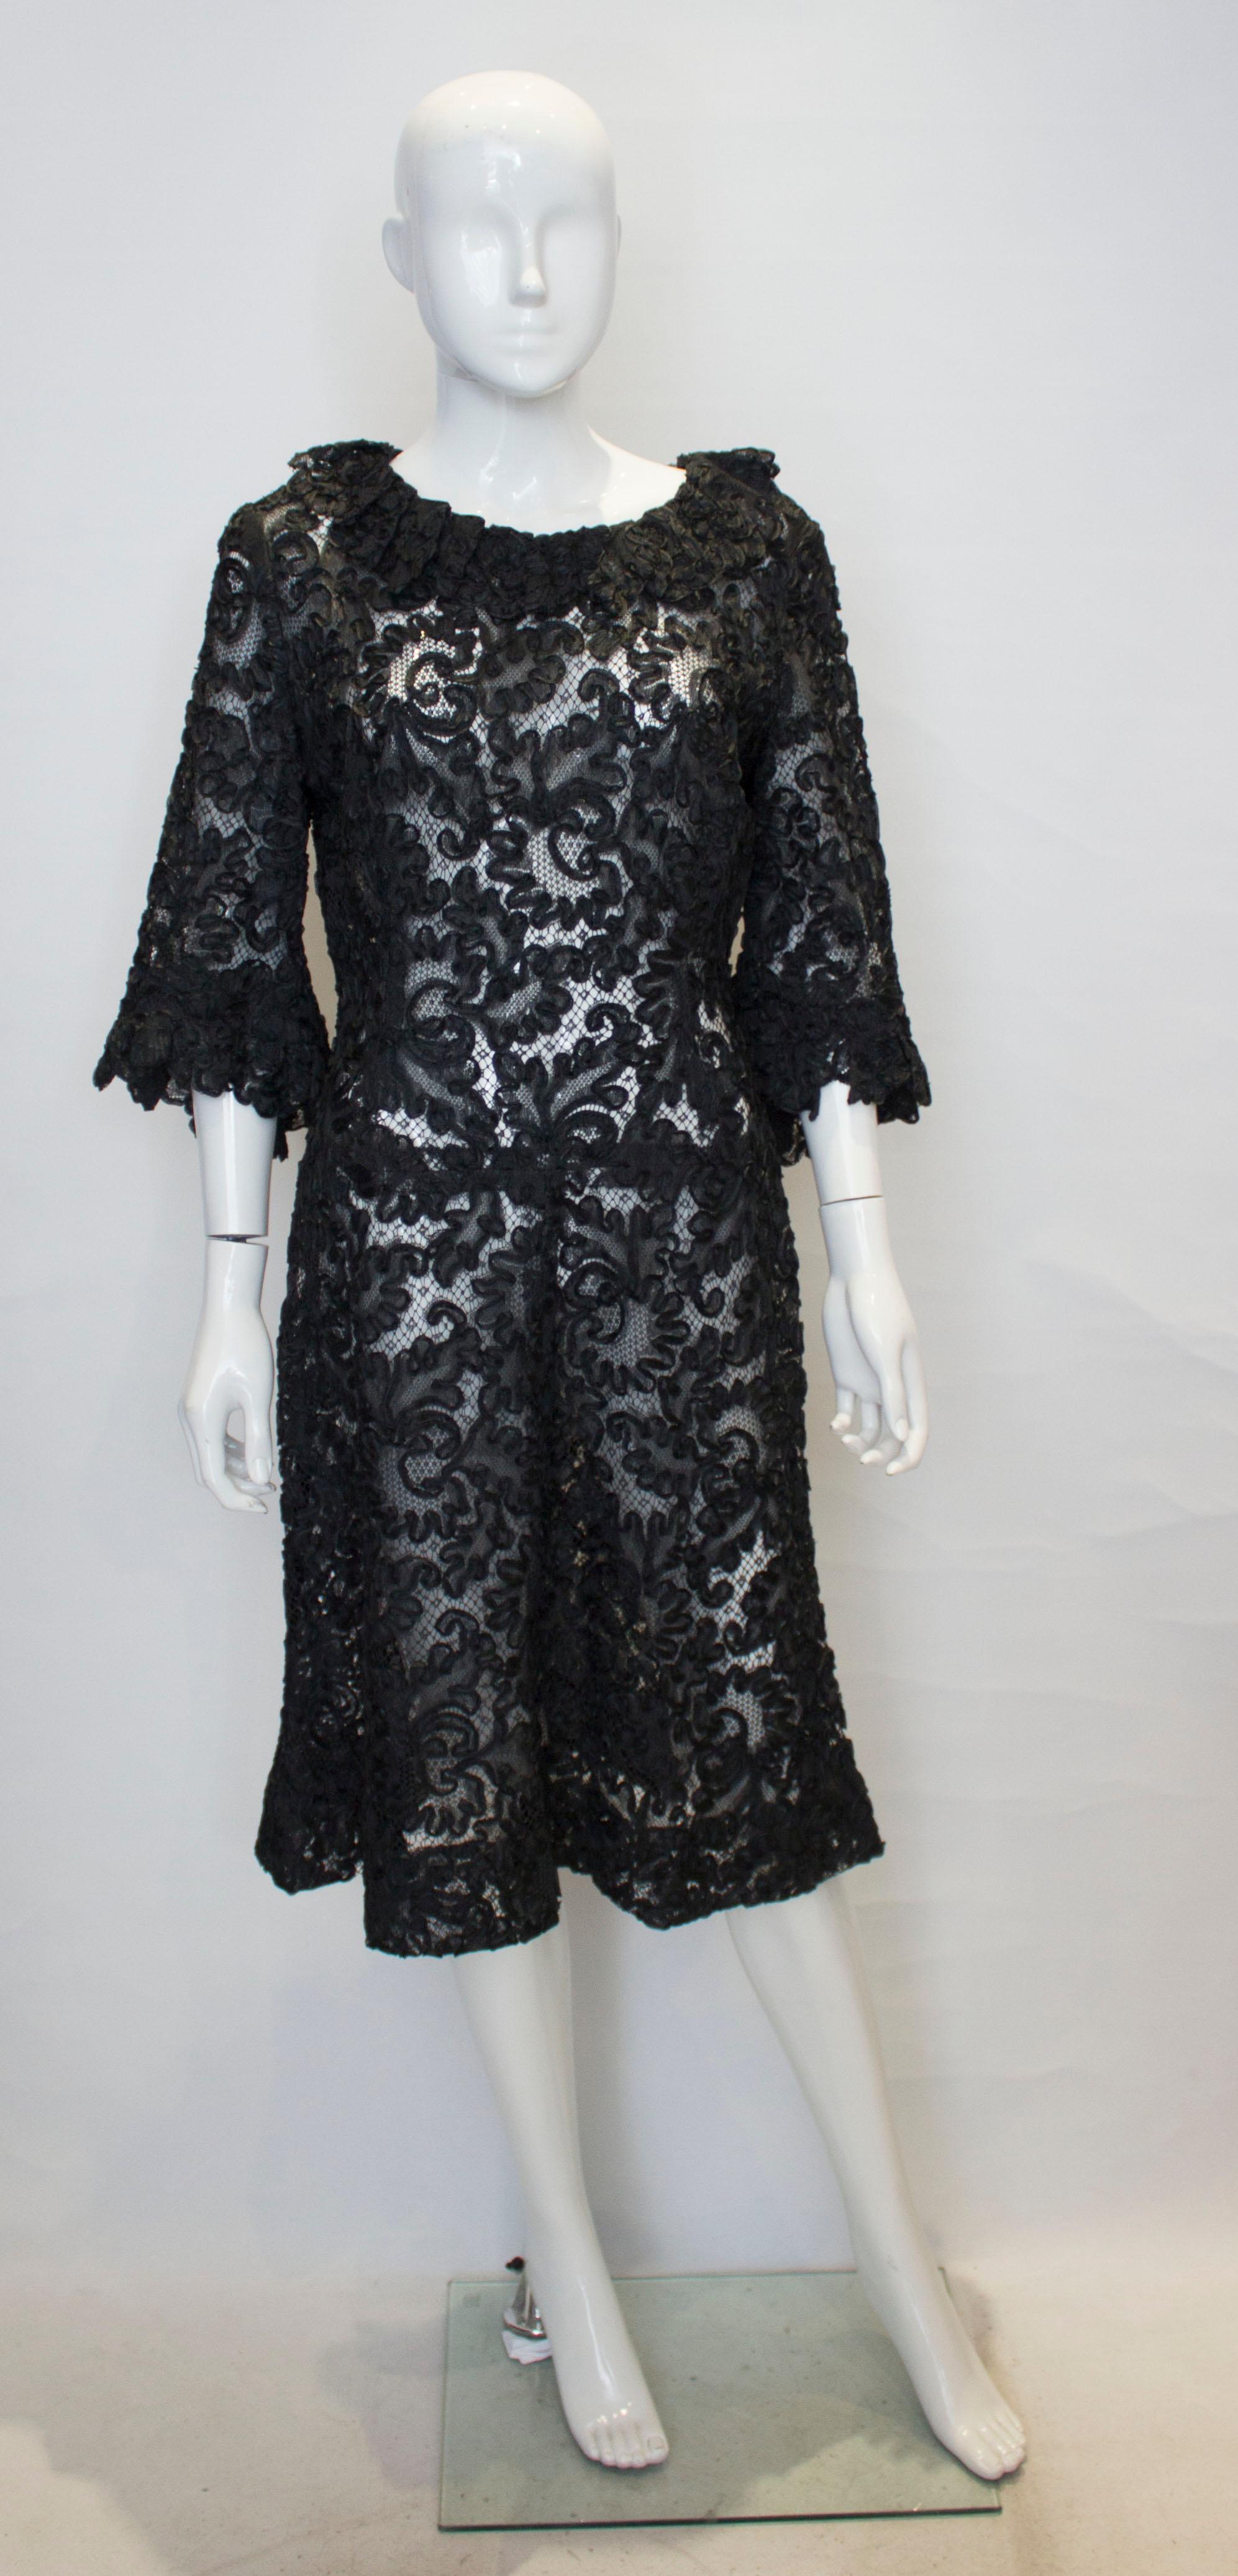 Ein schickes Cocktailkleid in schwarzer Schleifenoptik. Das Kleid hat Rüschendetails am Kragen und an den Manschetten sowie einen zentralen Reißverschluss am Rücken.